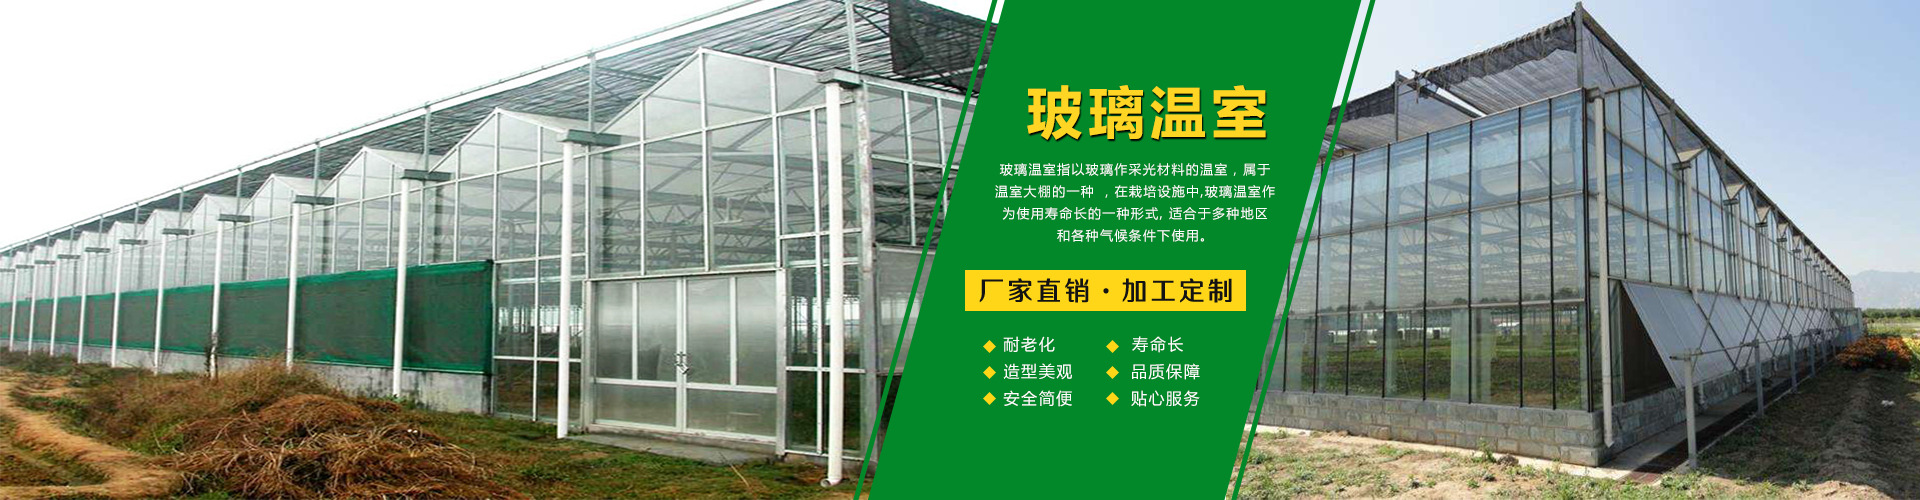 专业安装设计玻璃温室 智能温室 日光温室 连栋温室 阳光板温室示例图15